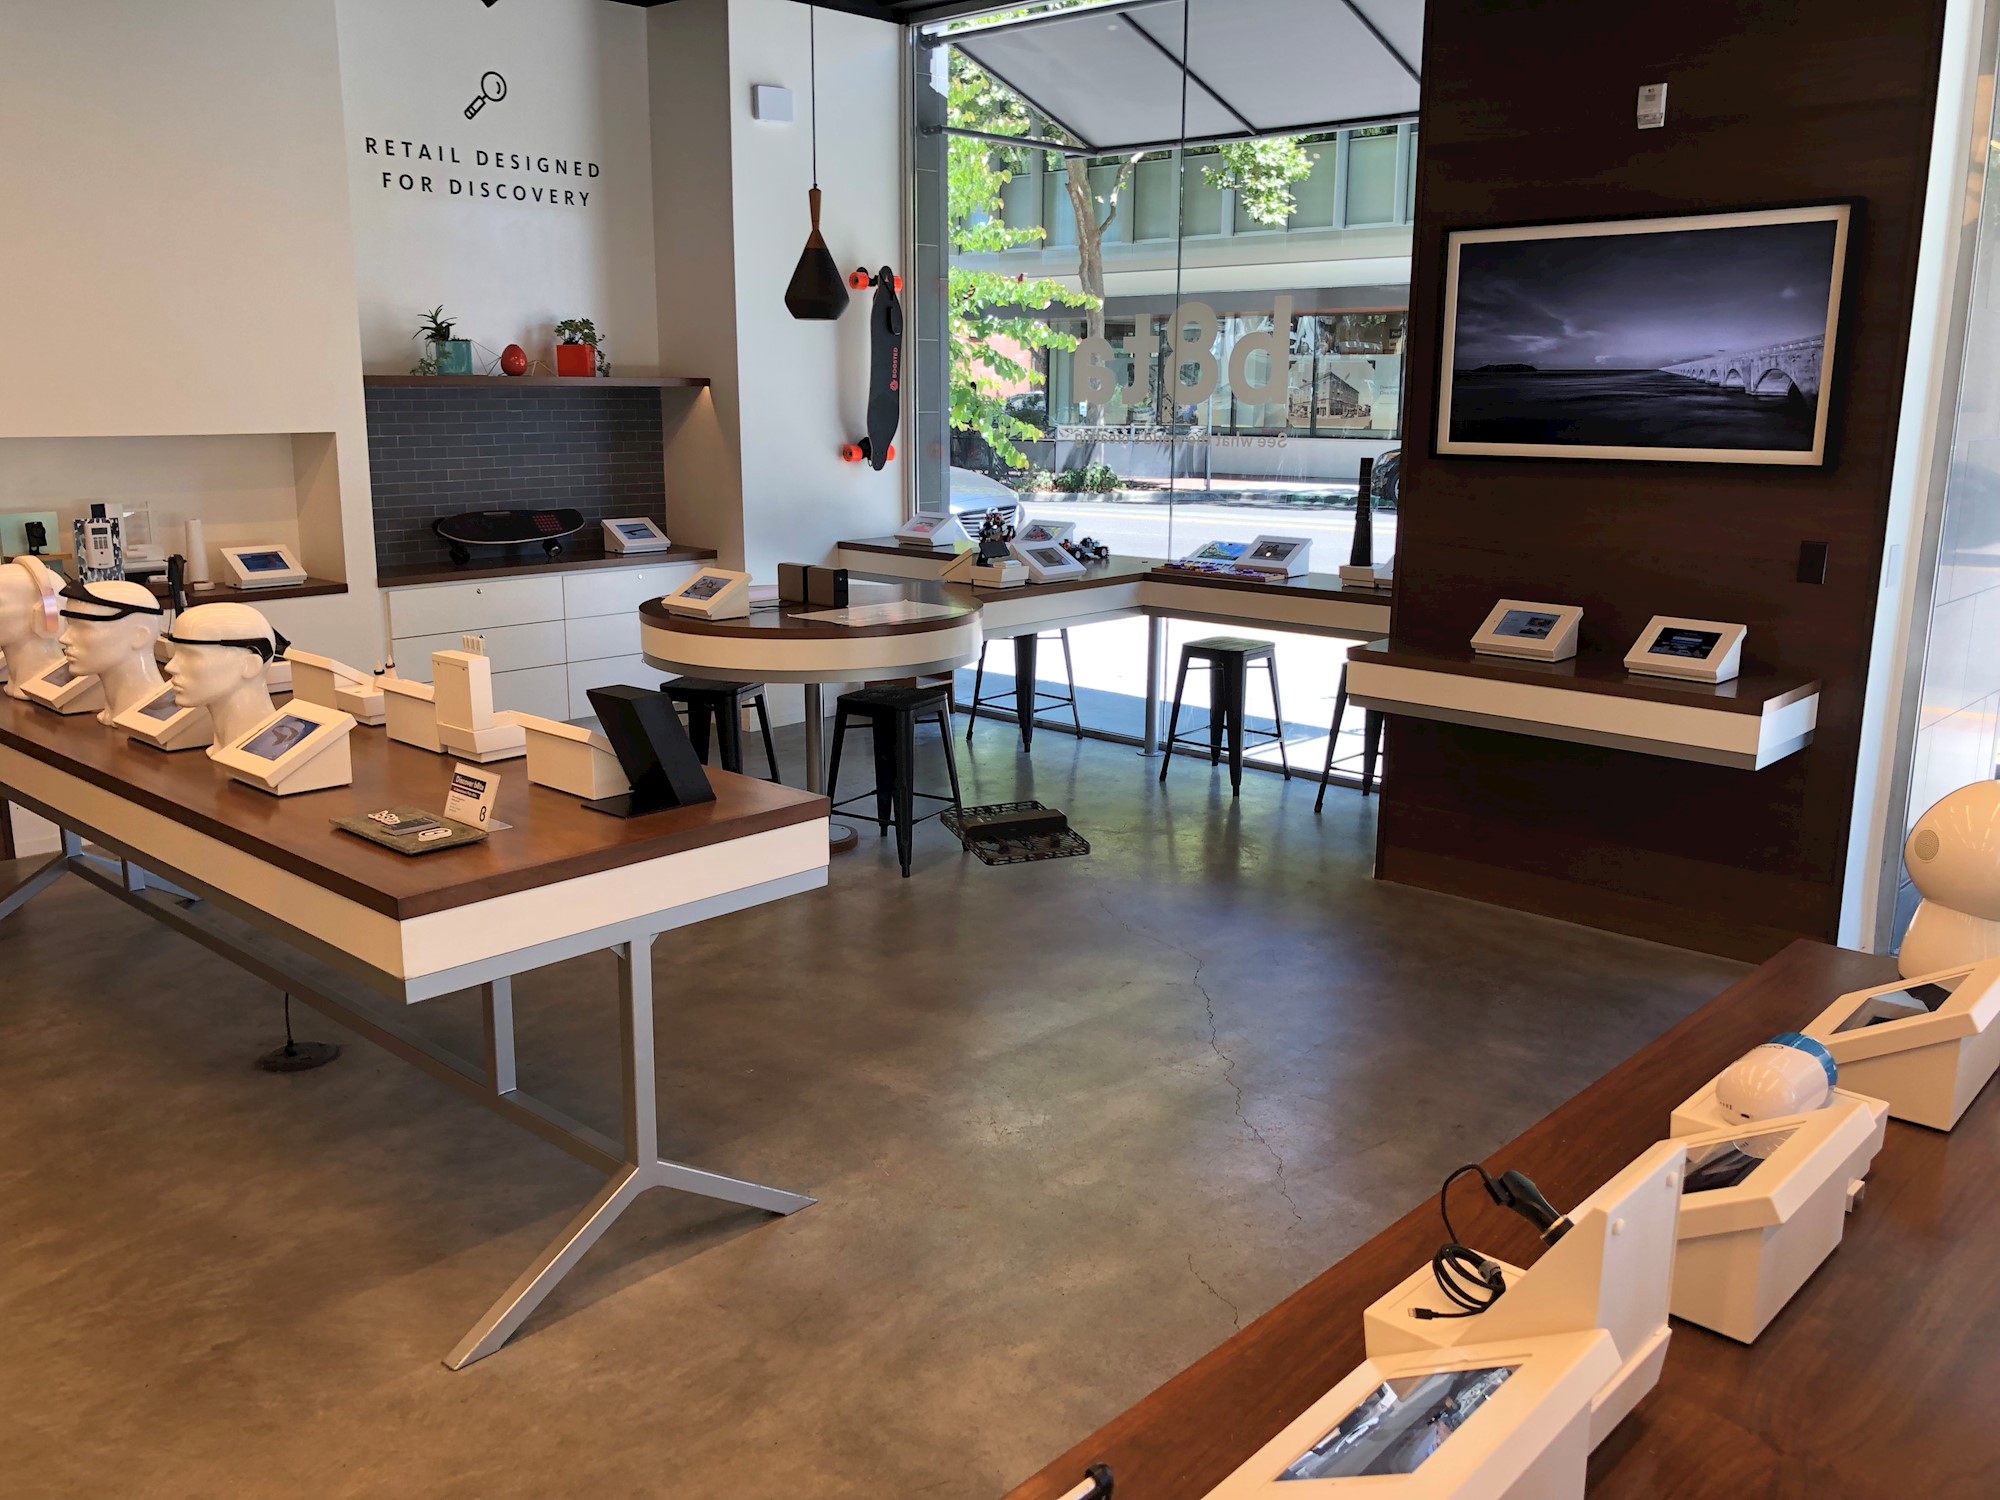 Experimental store in Palo Alto